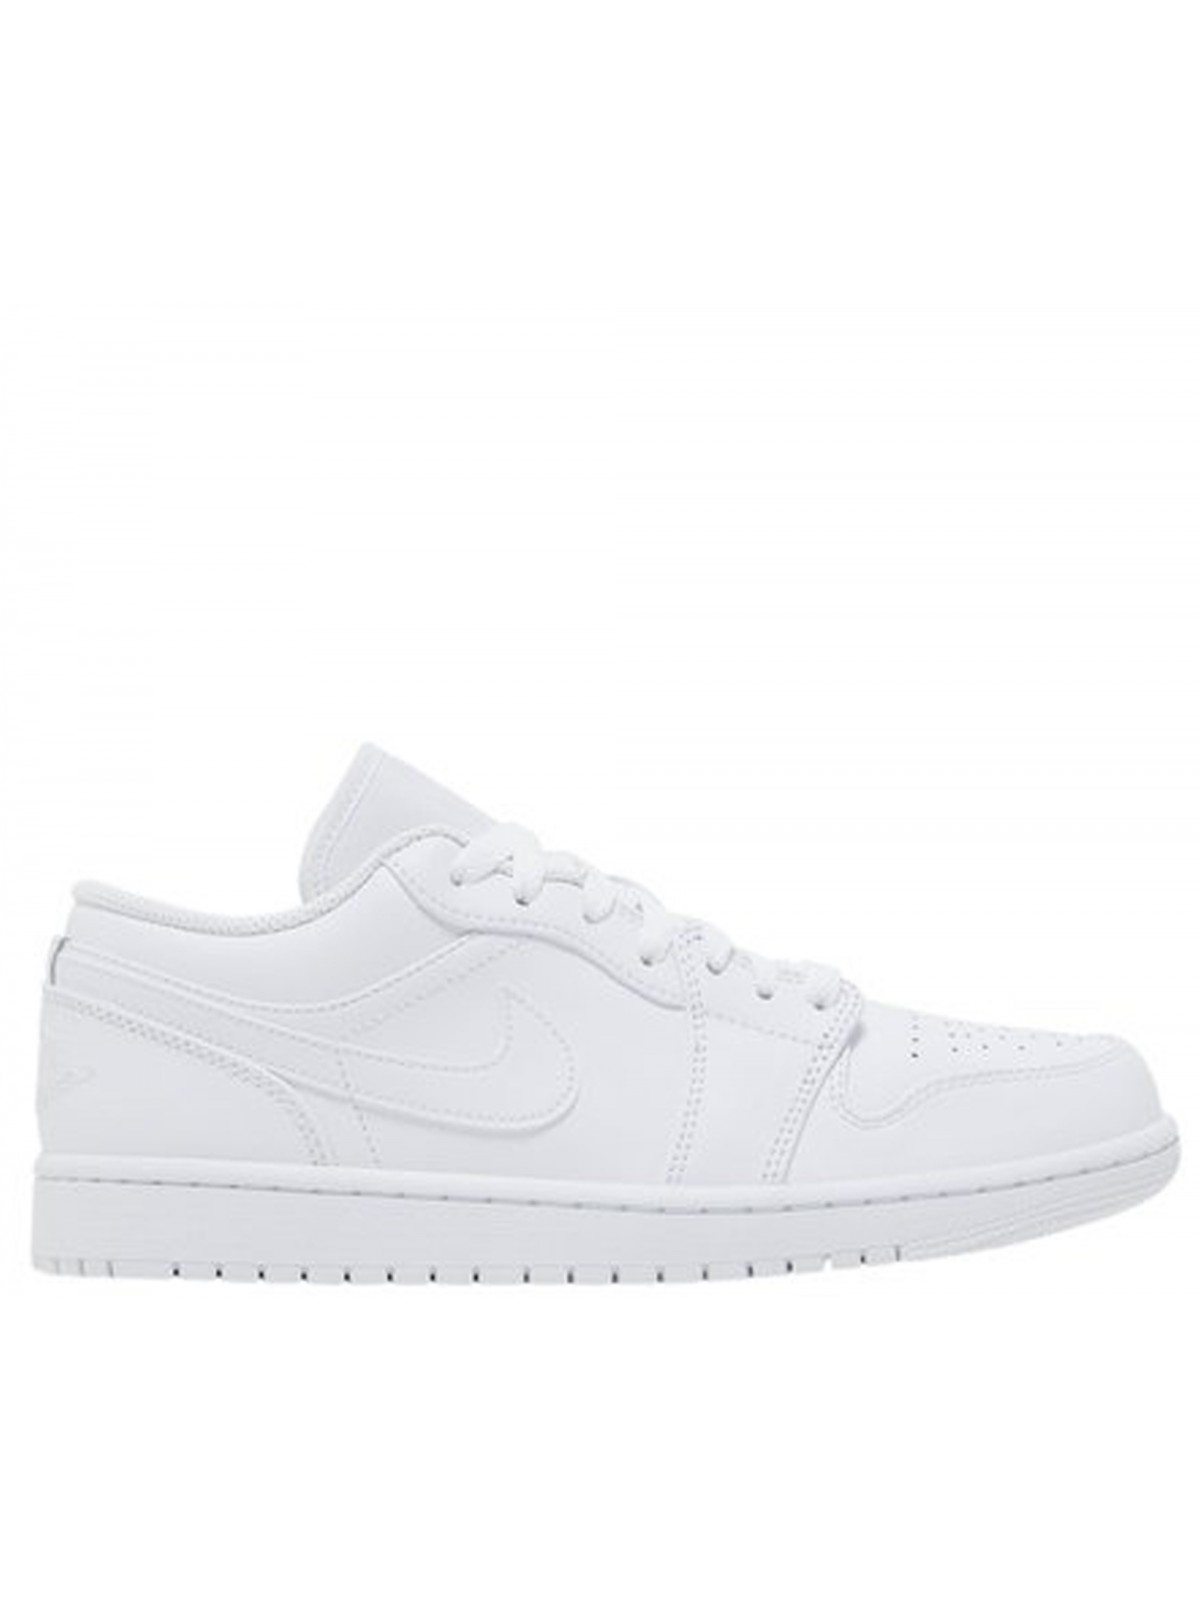 Nike Air Jordan 1 Low blanc 553558-136